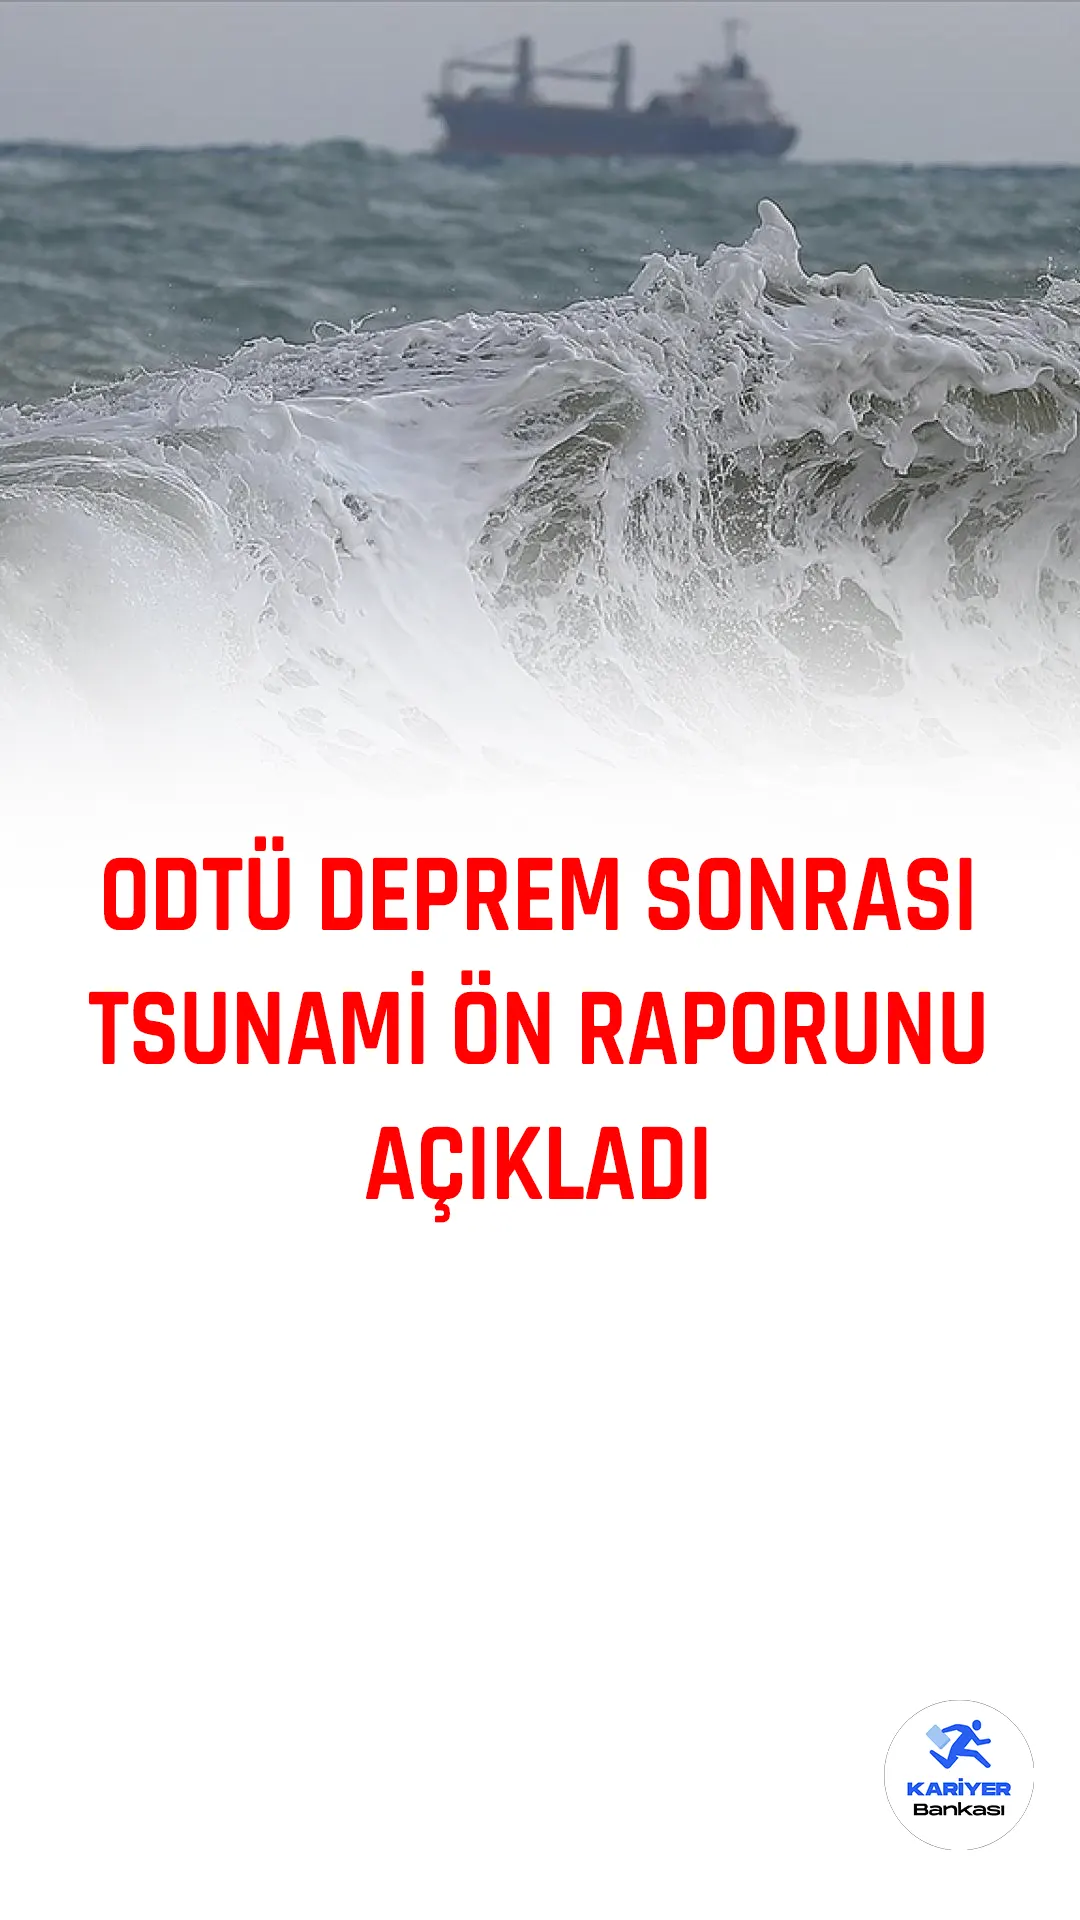 ODTÜ Kıyı ve Deniz Mühendisliği Araştırma Merkezi, Doğu Akdeniz'deki Tsunami Değerlendirmeleri projesi kapsamında İskenderun Körfezi'nde küçük genlikli tsunami oluştuğunu raporladı.